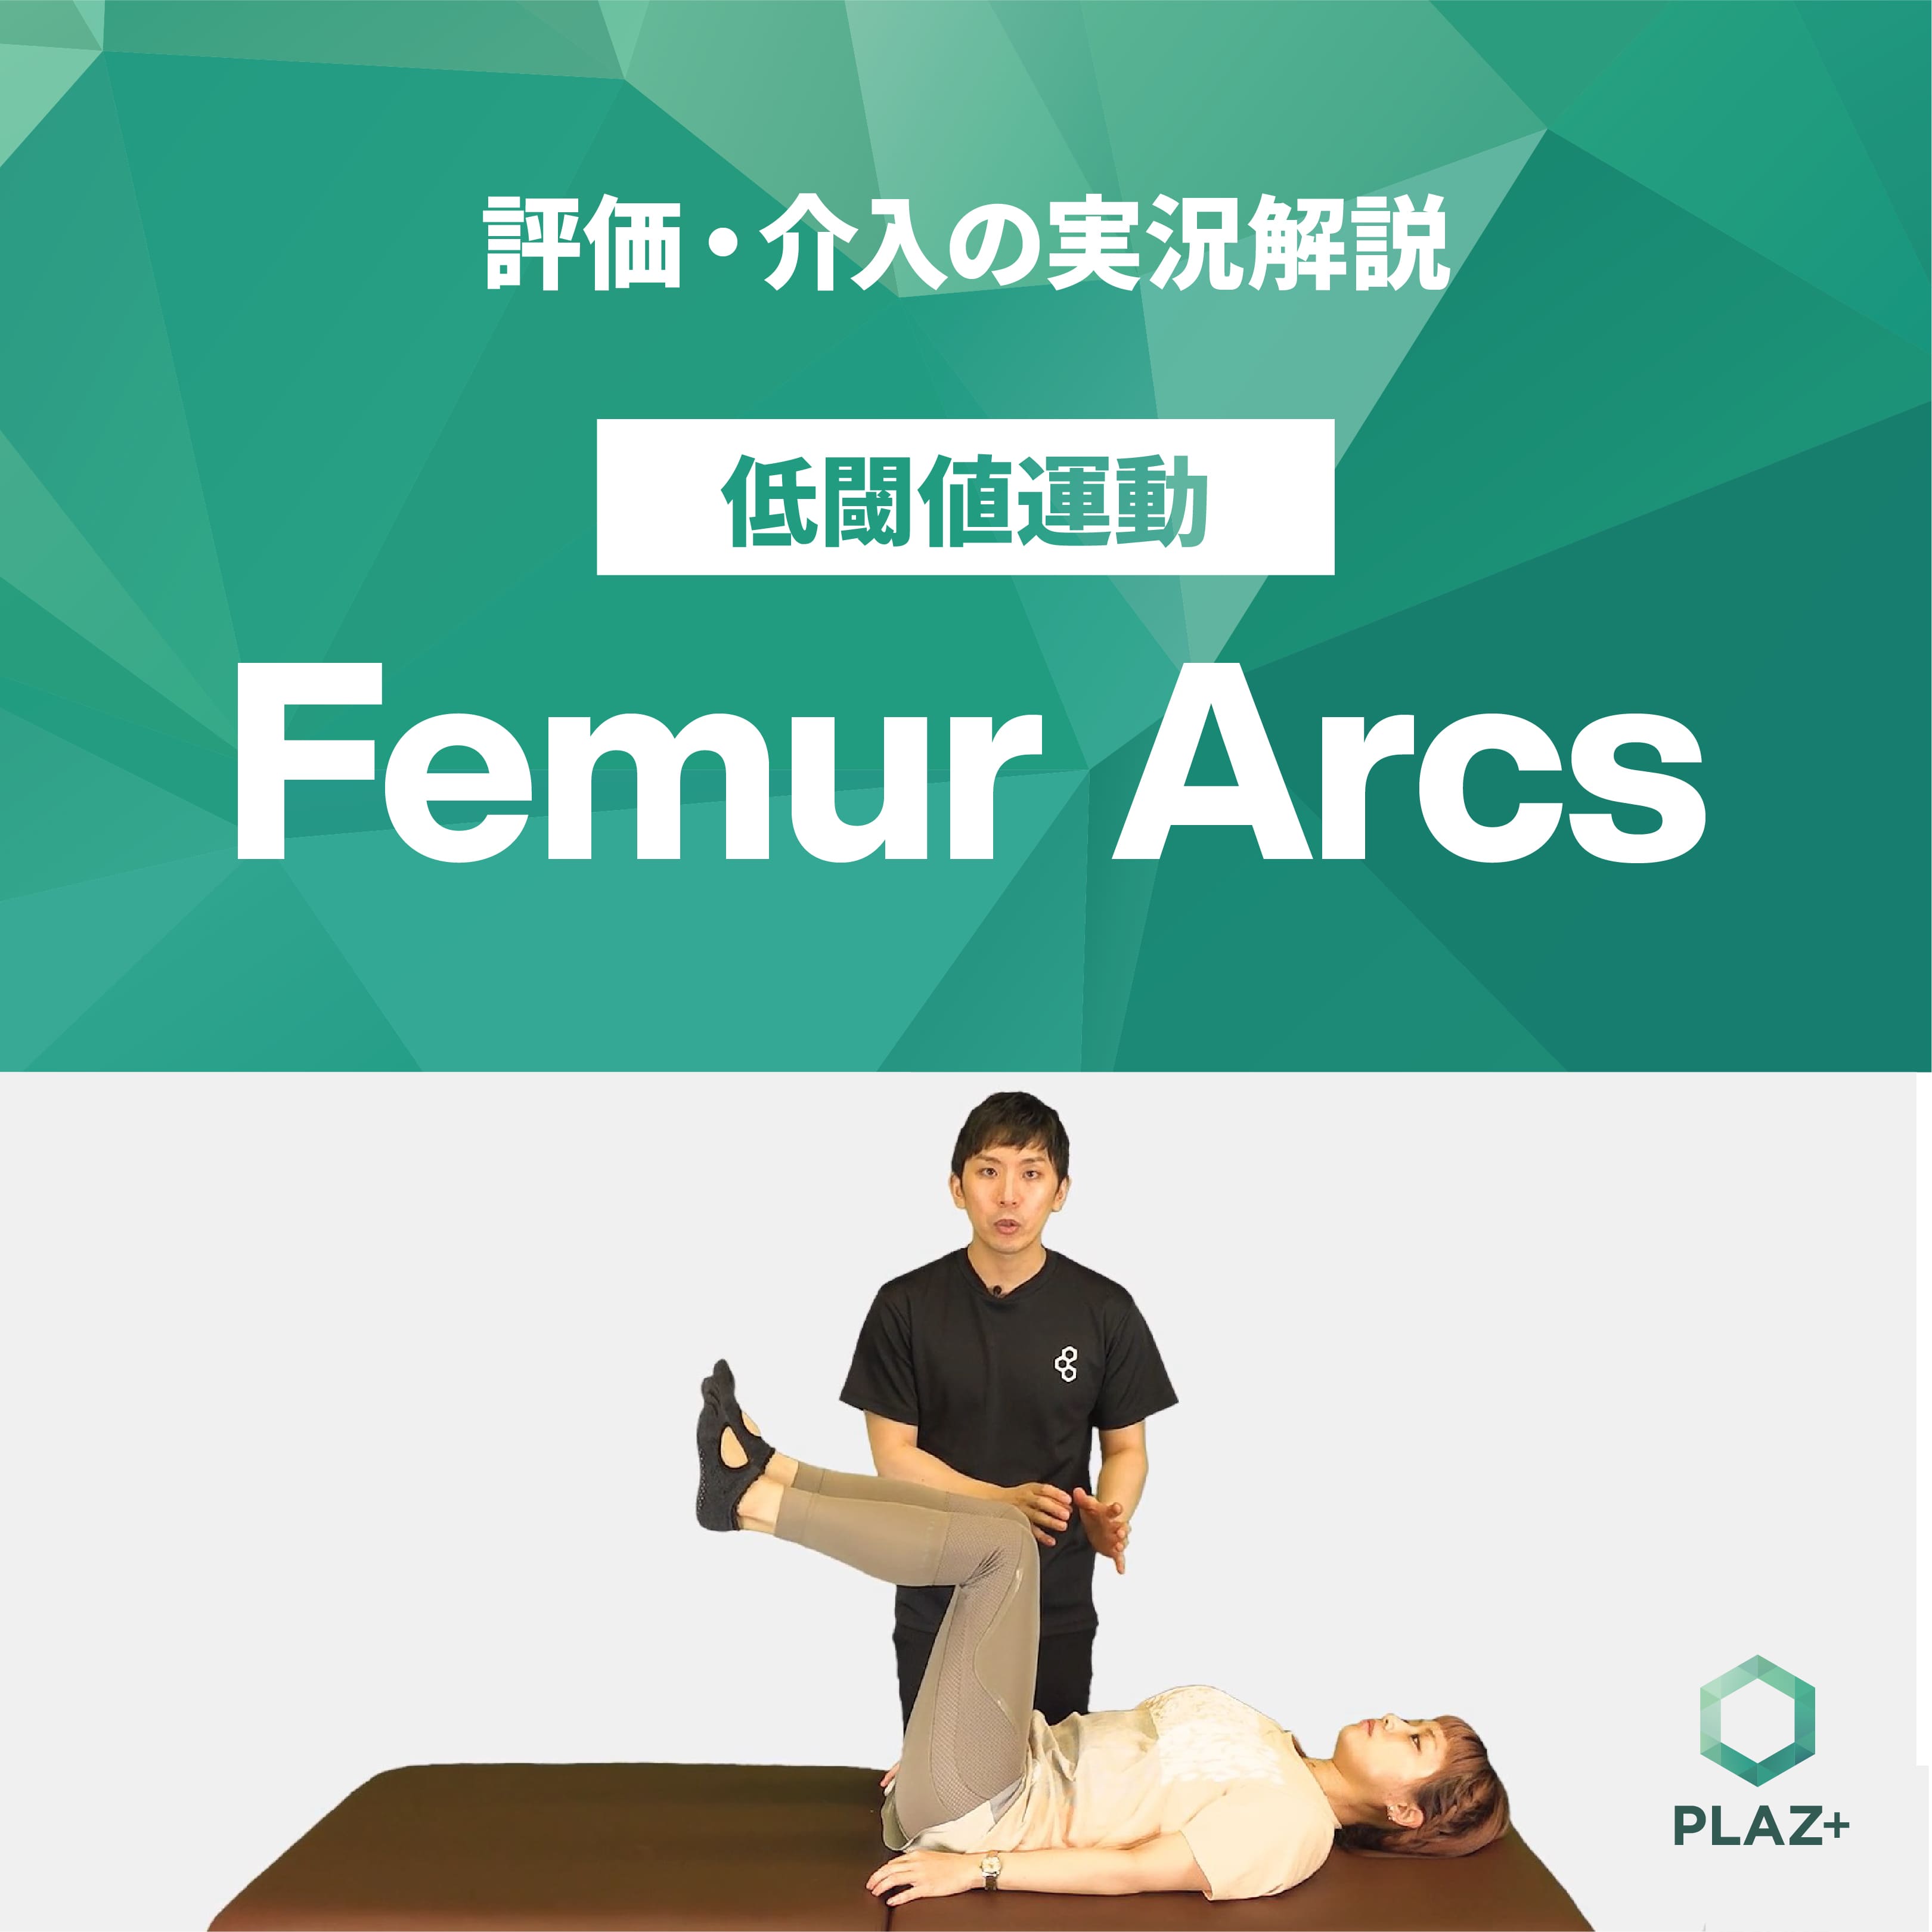 Femur Arcs